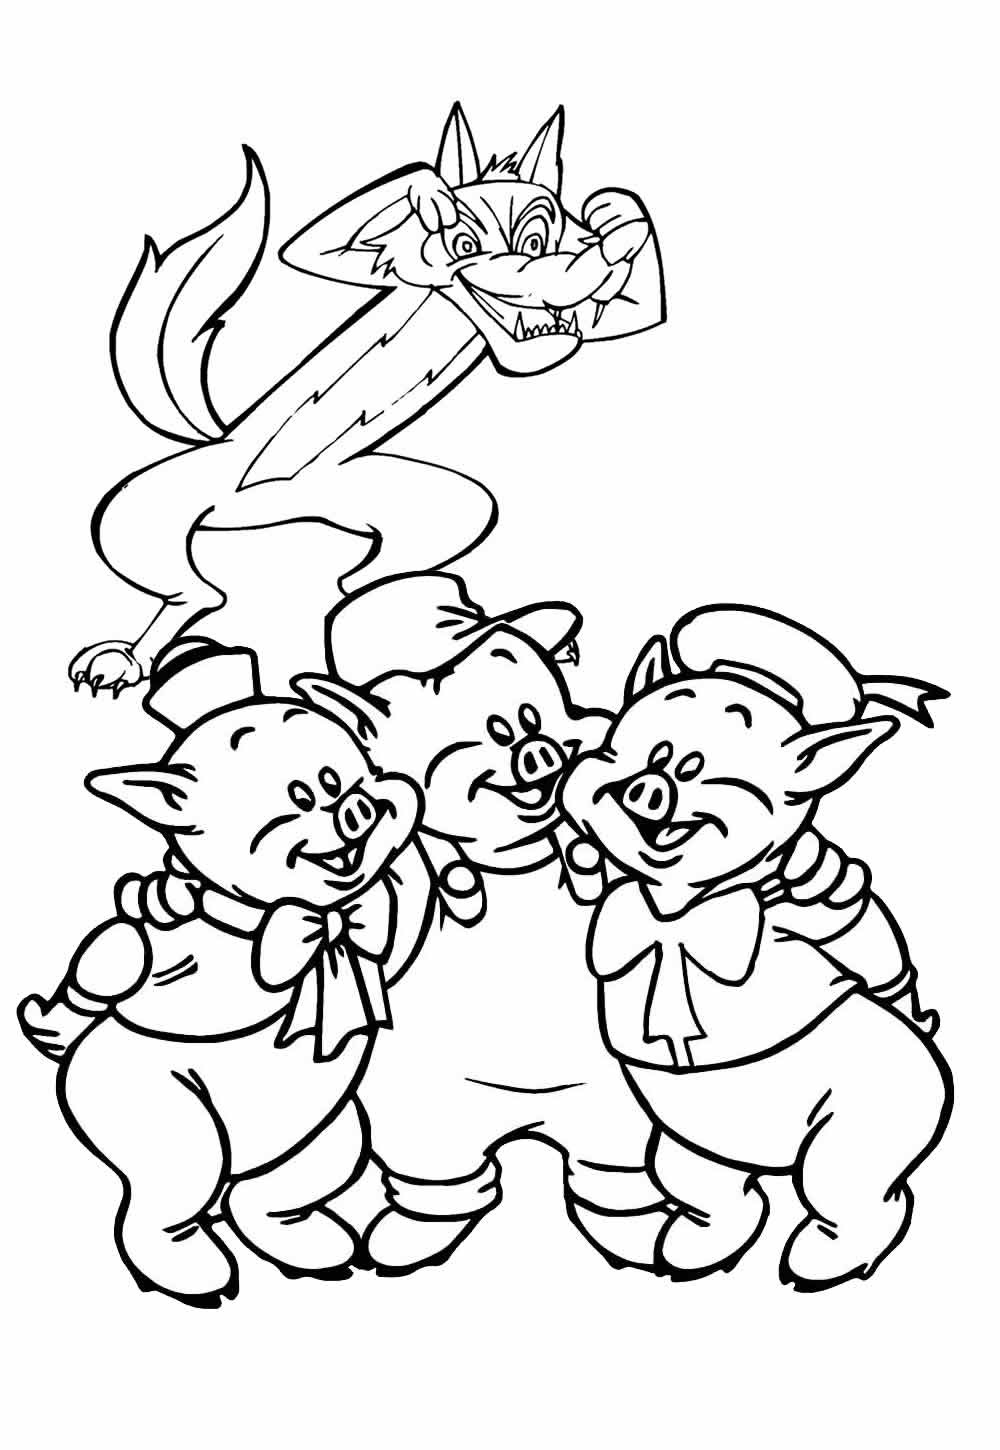 Desenho dos Três Porquinhos